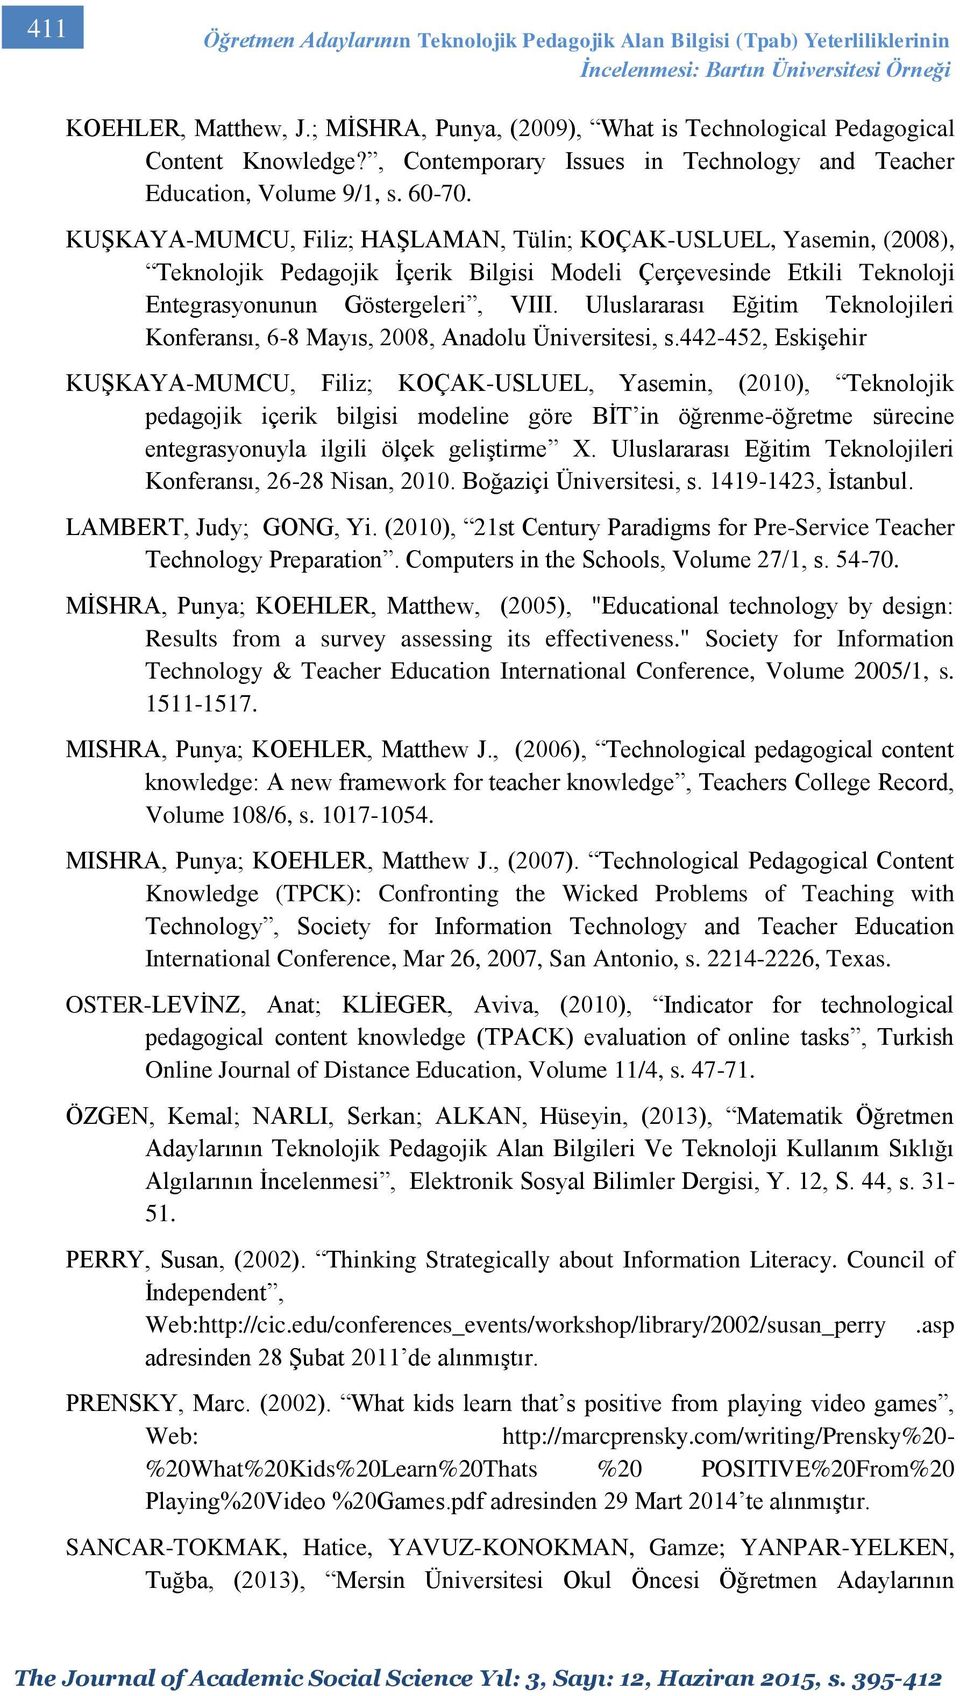 KUŞKAYA-MUMCU, Filiz; HAŞLAMAN, Tülin; KOÇAK-USLUEL, Yasemin, (2008), Teknolojik Pedagojik İçerik Bilgisi Modeli Çerçevesinde Etkili Teknoloji Entegrasyonunun Göstergeleri, VIII.